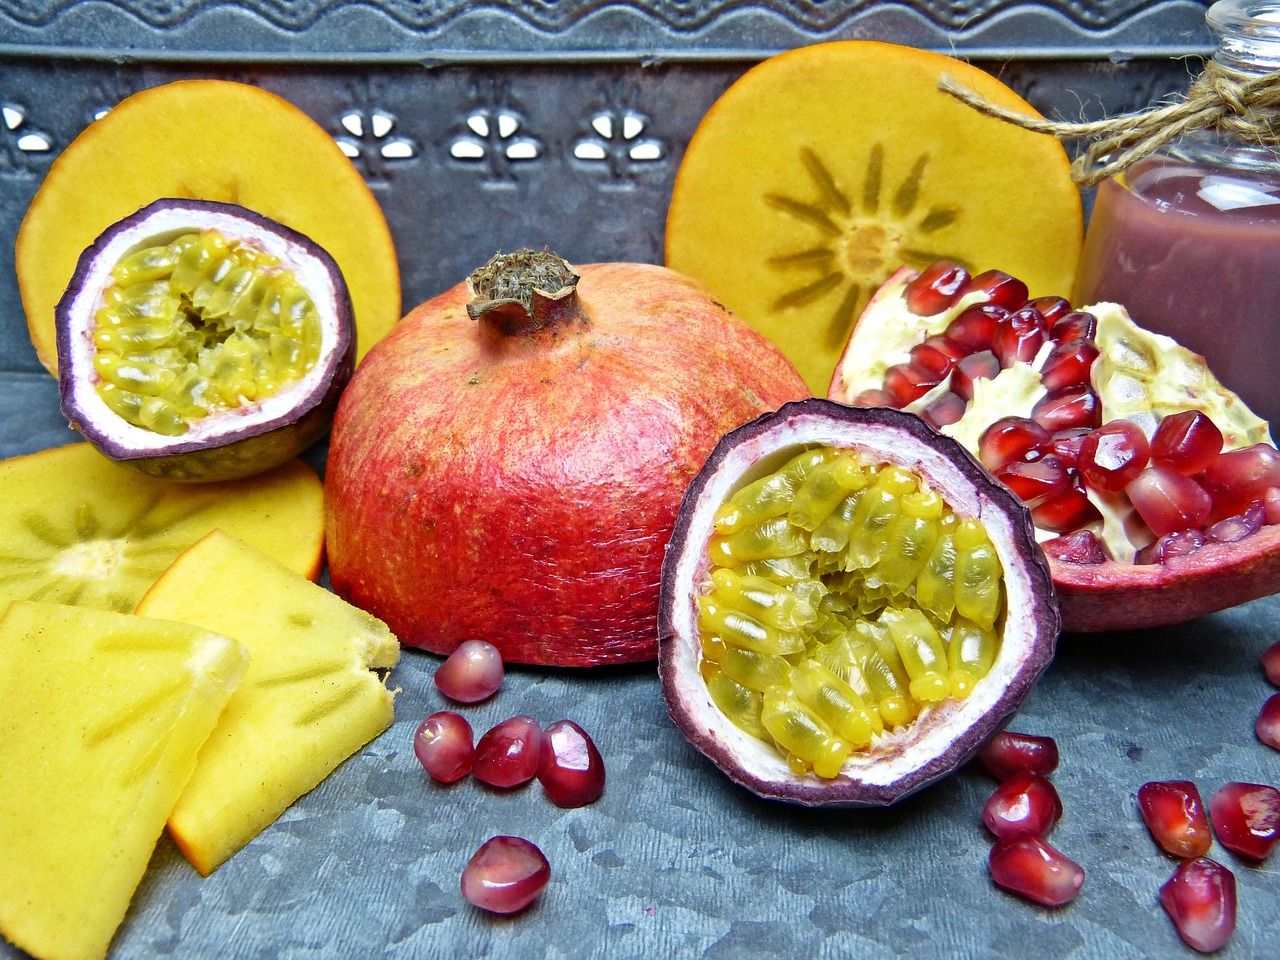 Kaki patří mezi exotické ovoce, které v Česku seženete běžně